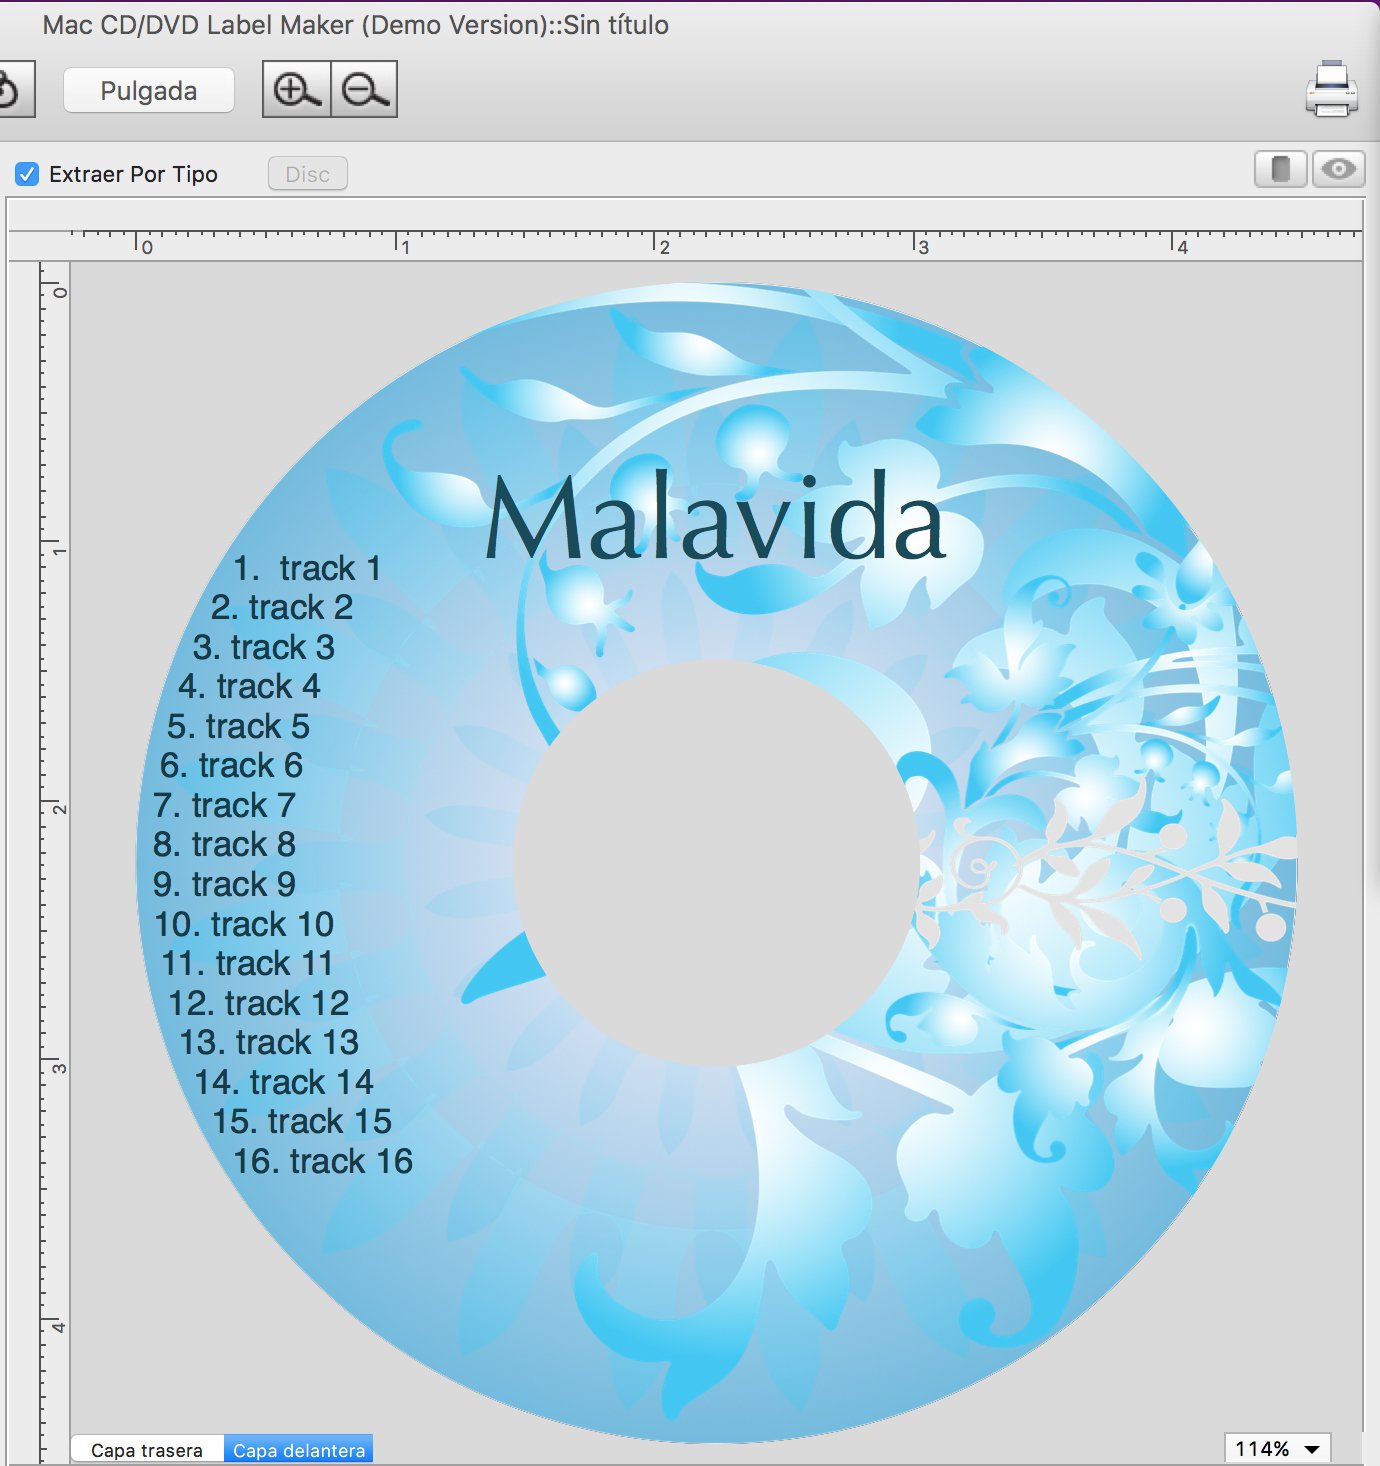 Dvd burner software, free download for mac